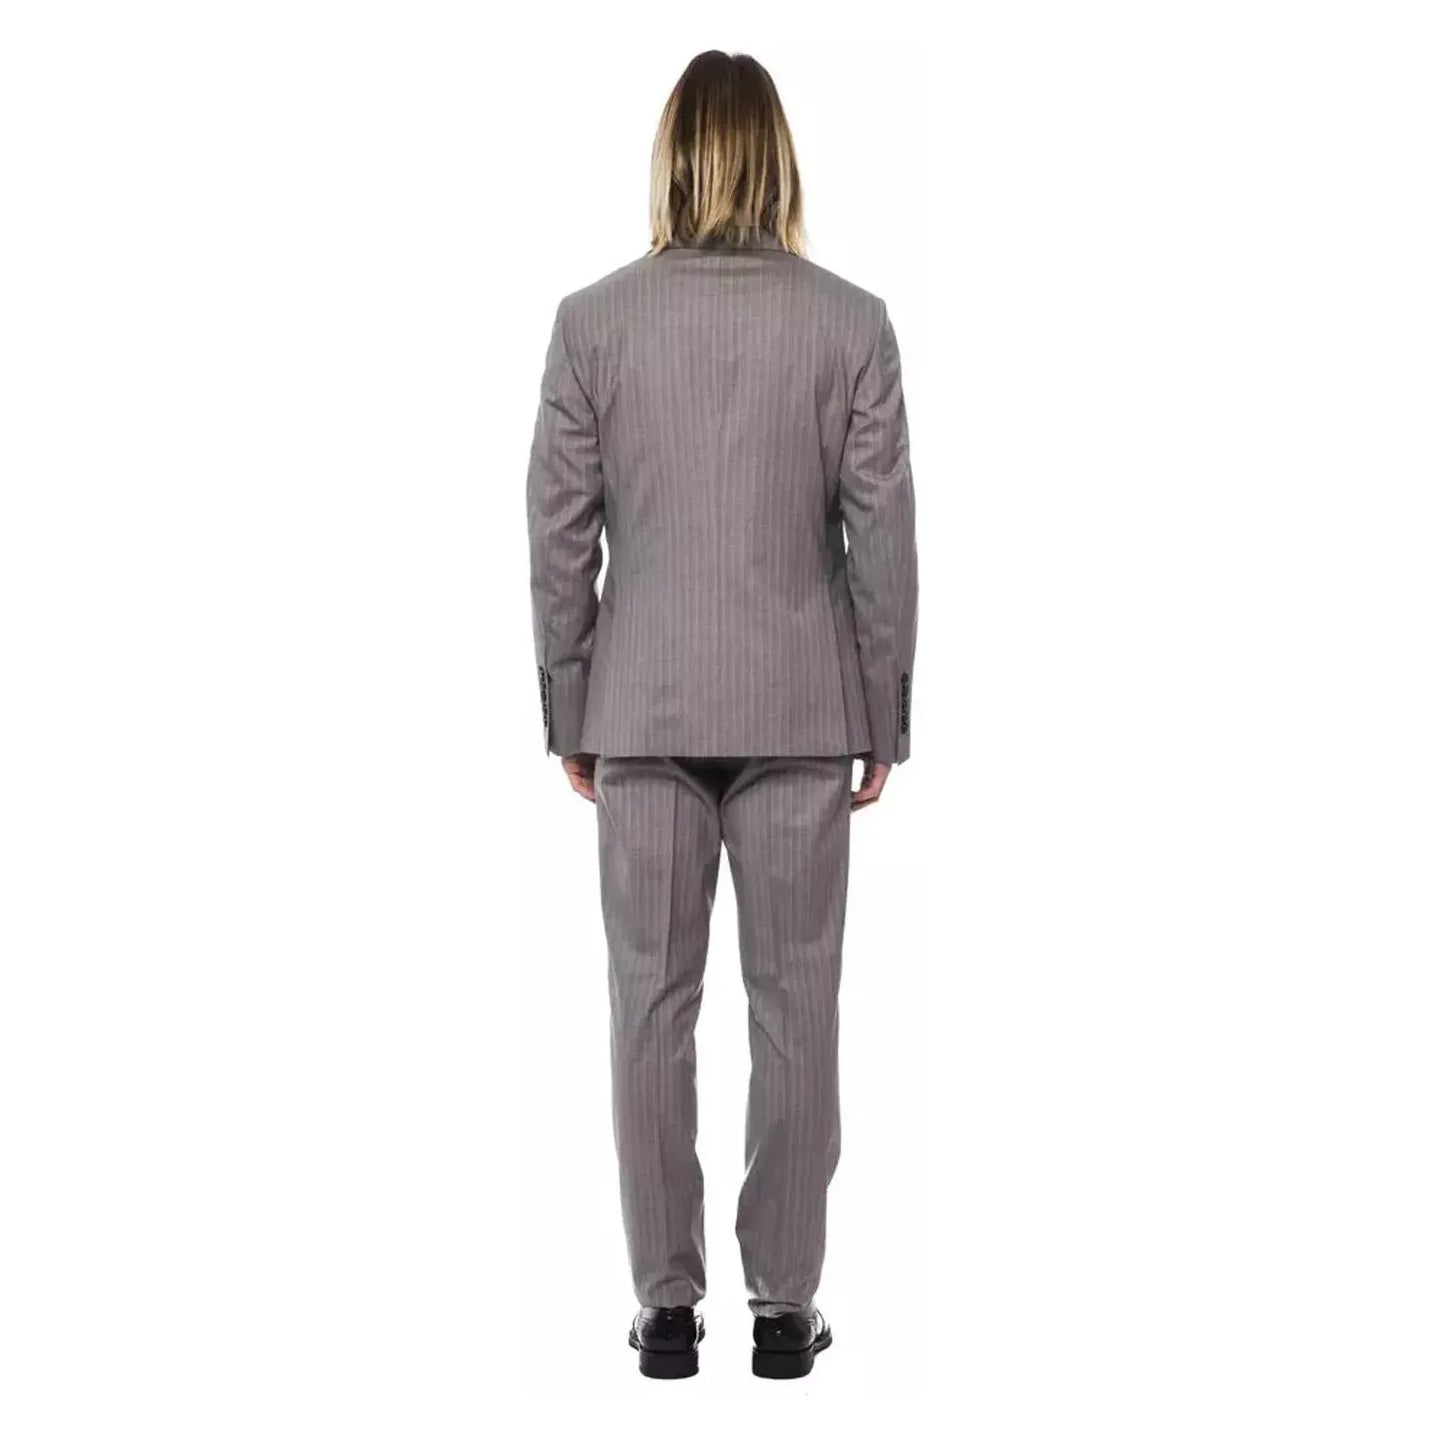 Billionaire Italian Couture Elegant Gray Italian Wool Suit grich-lt-grey-suit stock_product_image_10385_962419516-20-4c097980-75d.webp